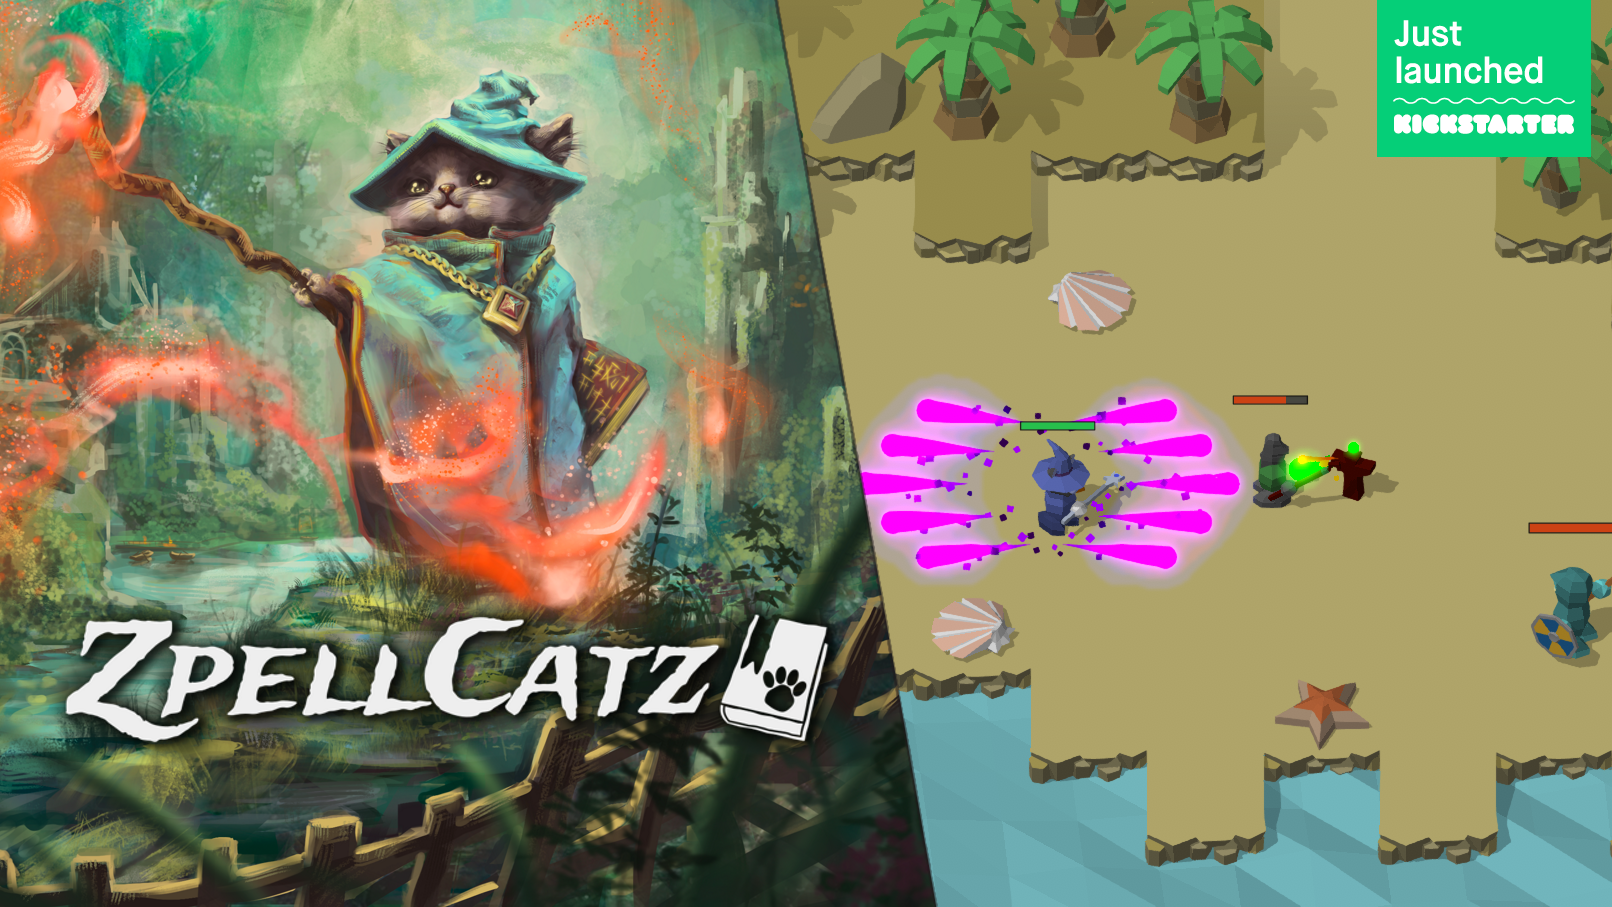 zpellcatz kickstarter launched